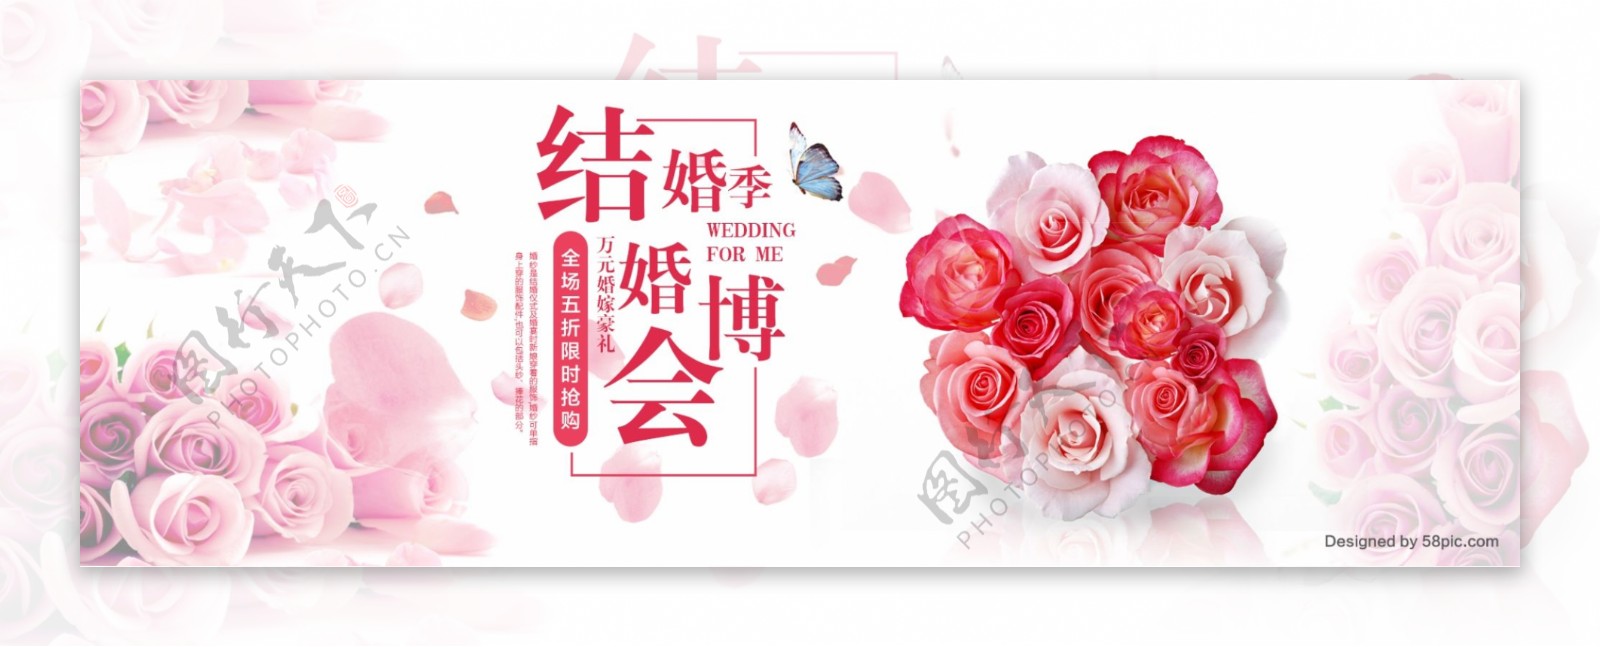 白色浪漫玫瑰花背景天猫婚博会淘宝电商海报